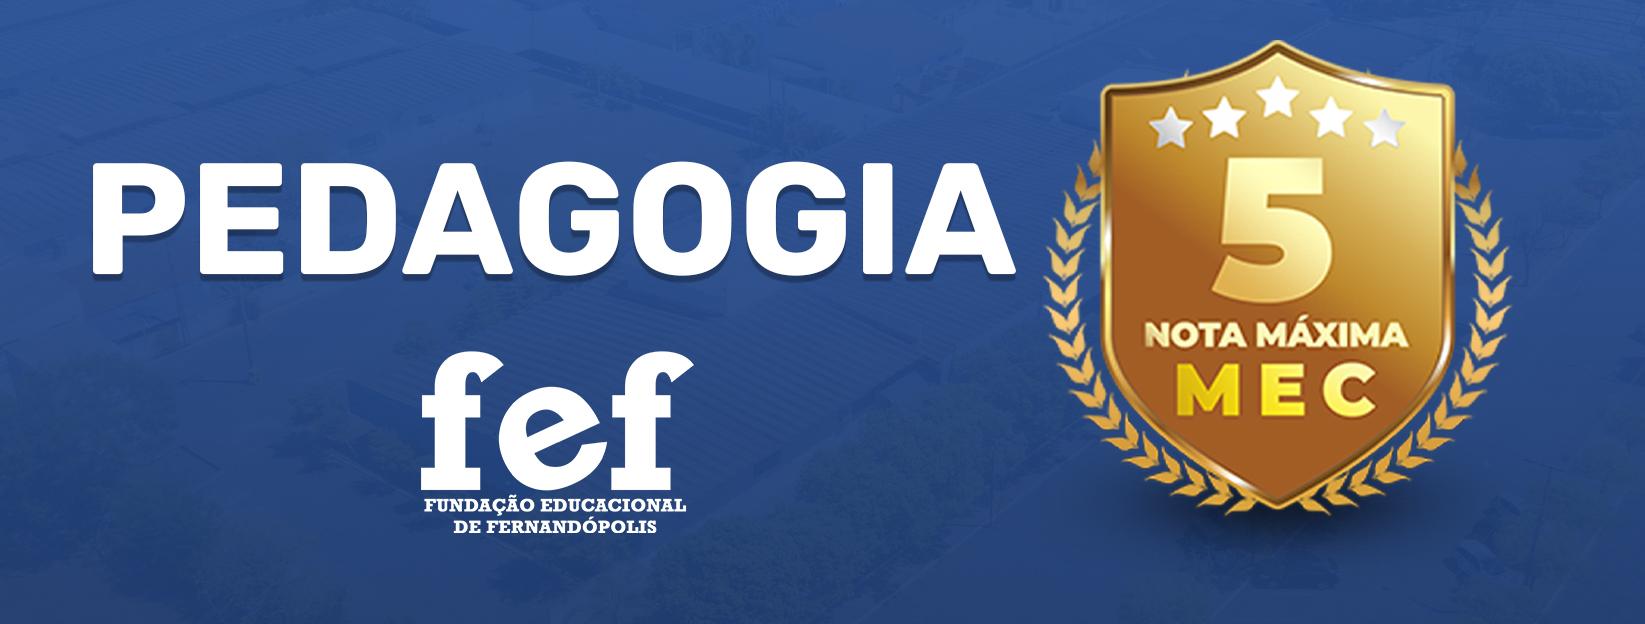 Banner Faculdades Integradas de Fernandópolis - Curso de Pedagogia da FEF recebe nota máxima em reconhecimento pelo MEC